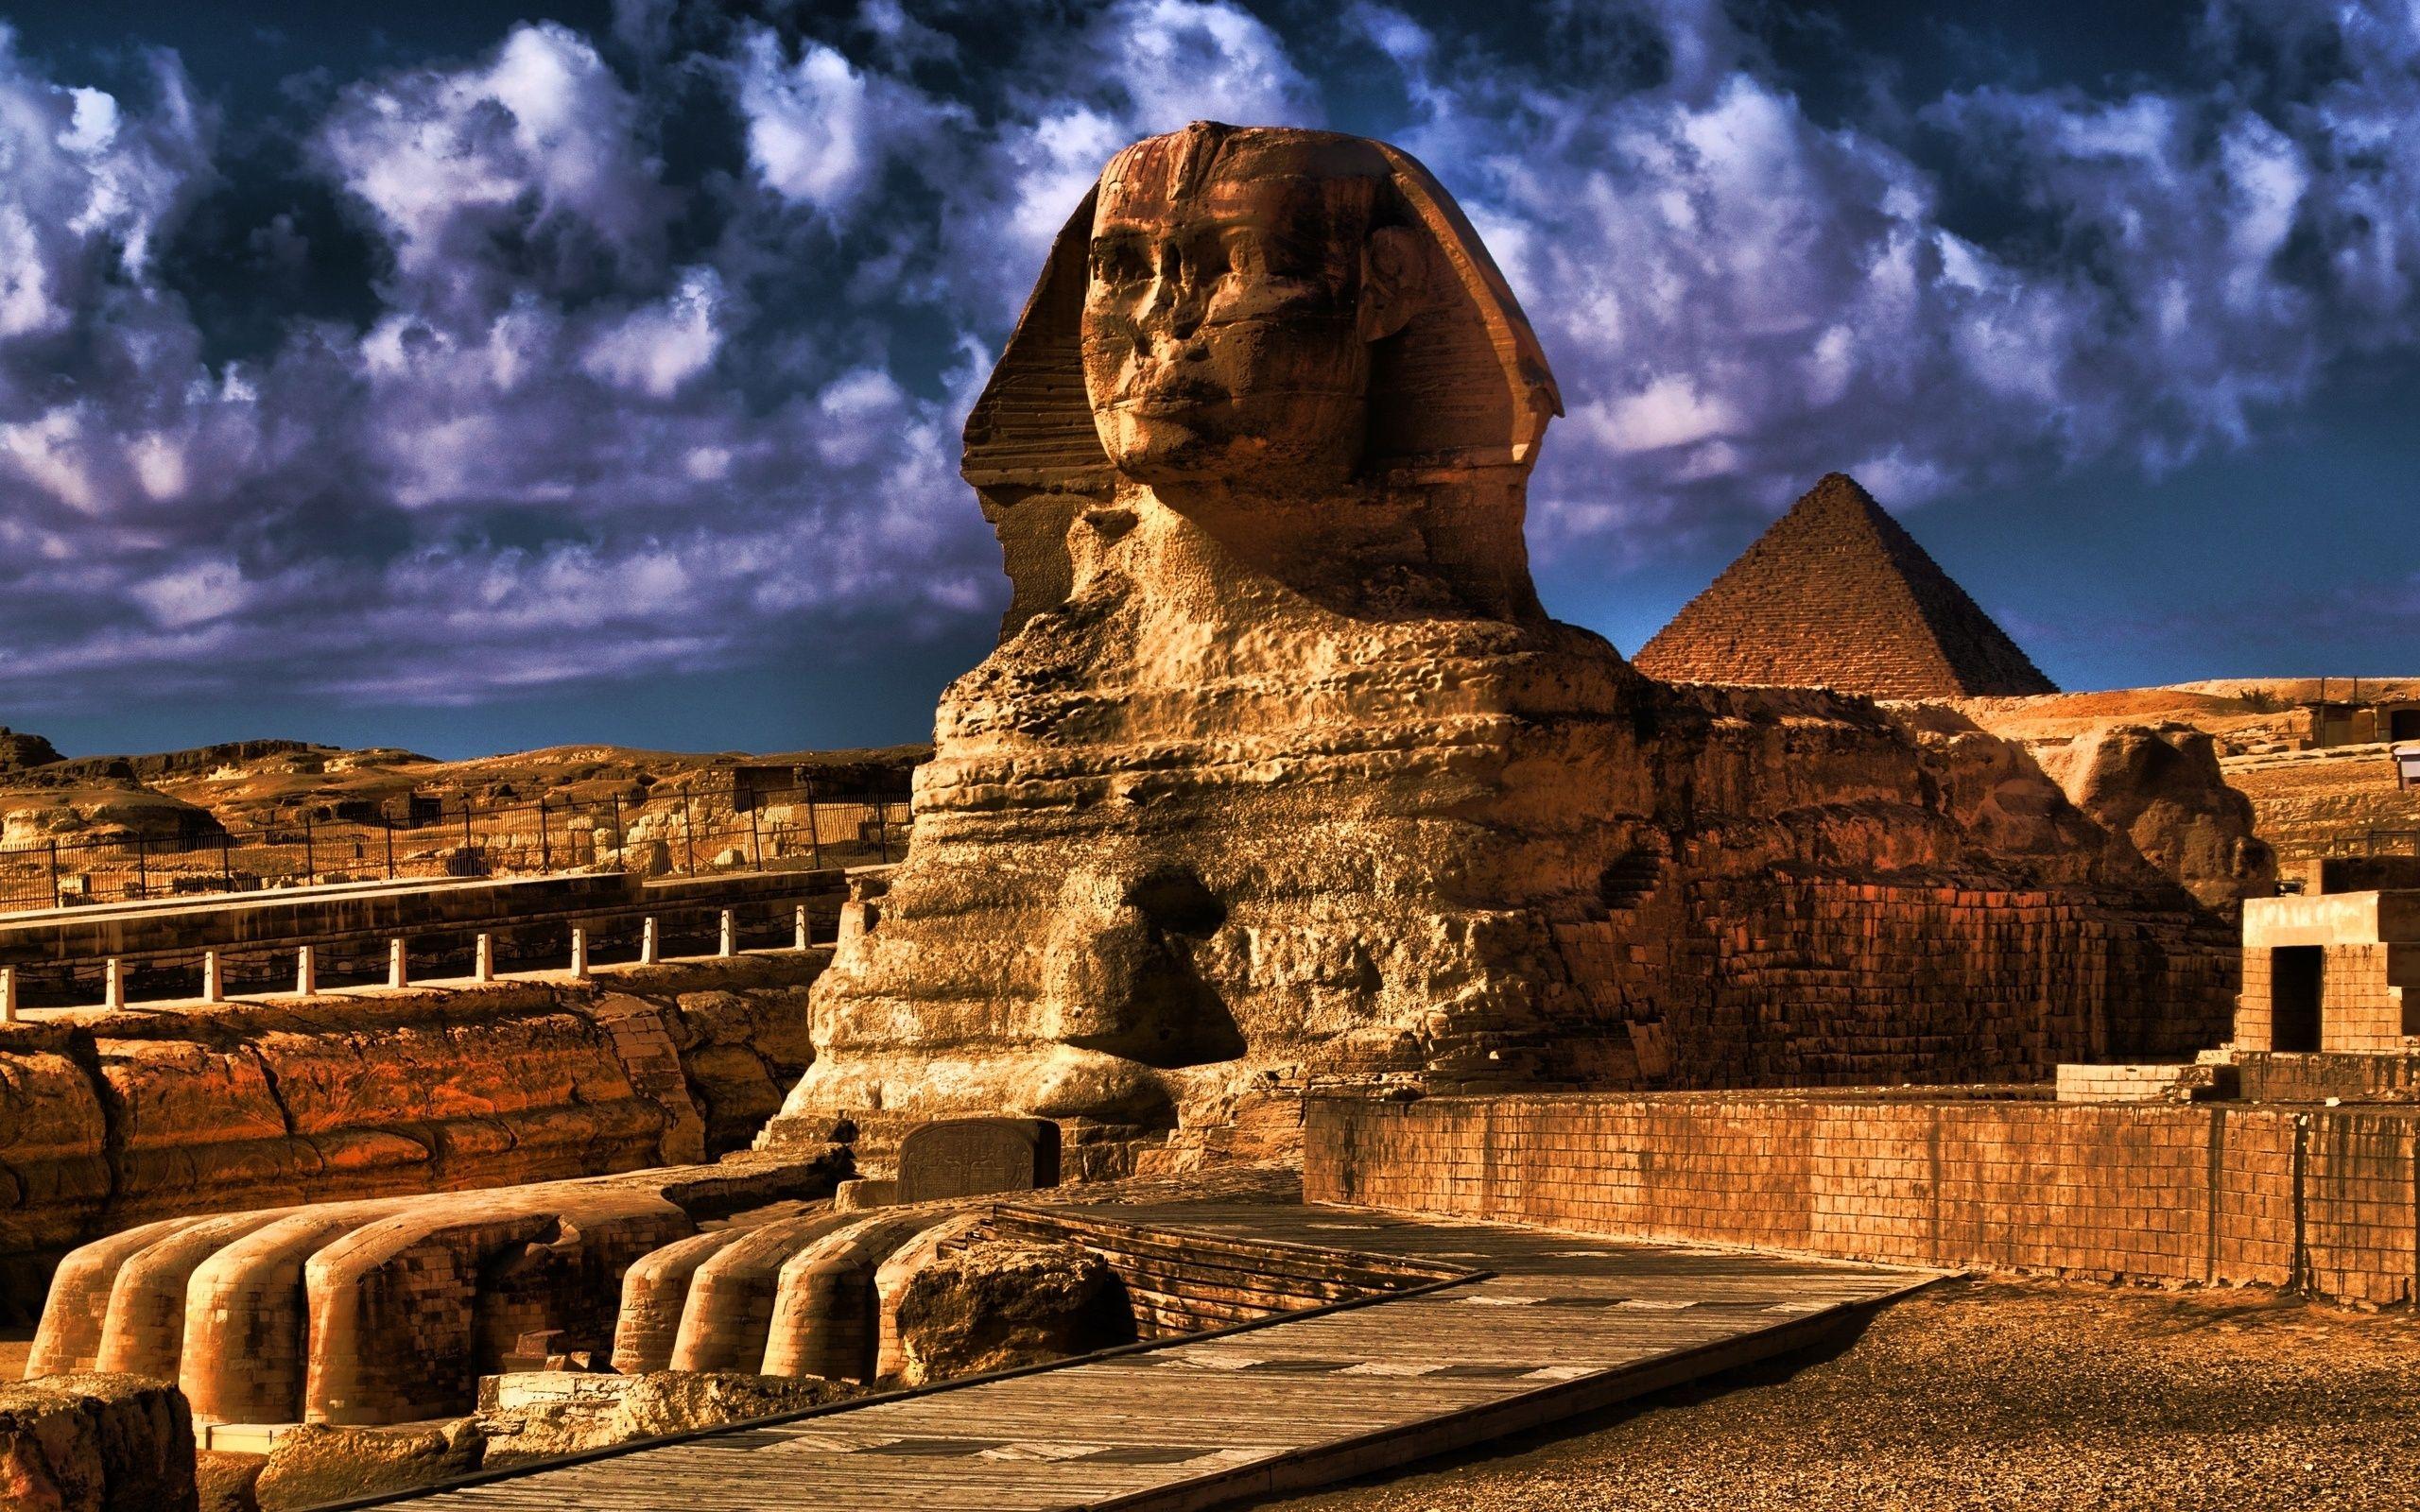 Sphinx Wallpapers - Top Free Sphinx Backgrounds ...
 Shinx Wallpaper